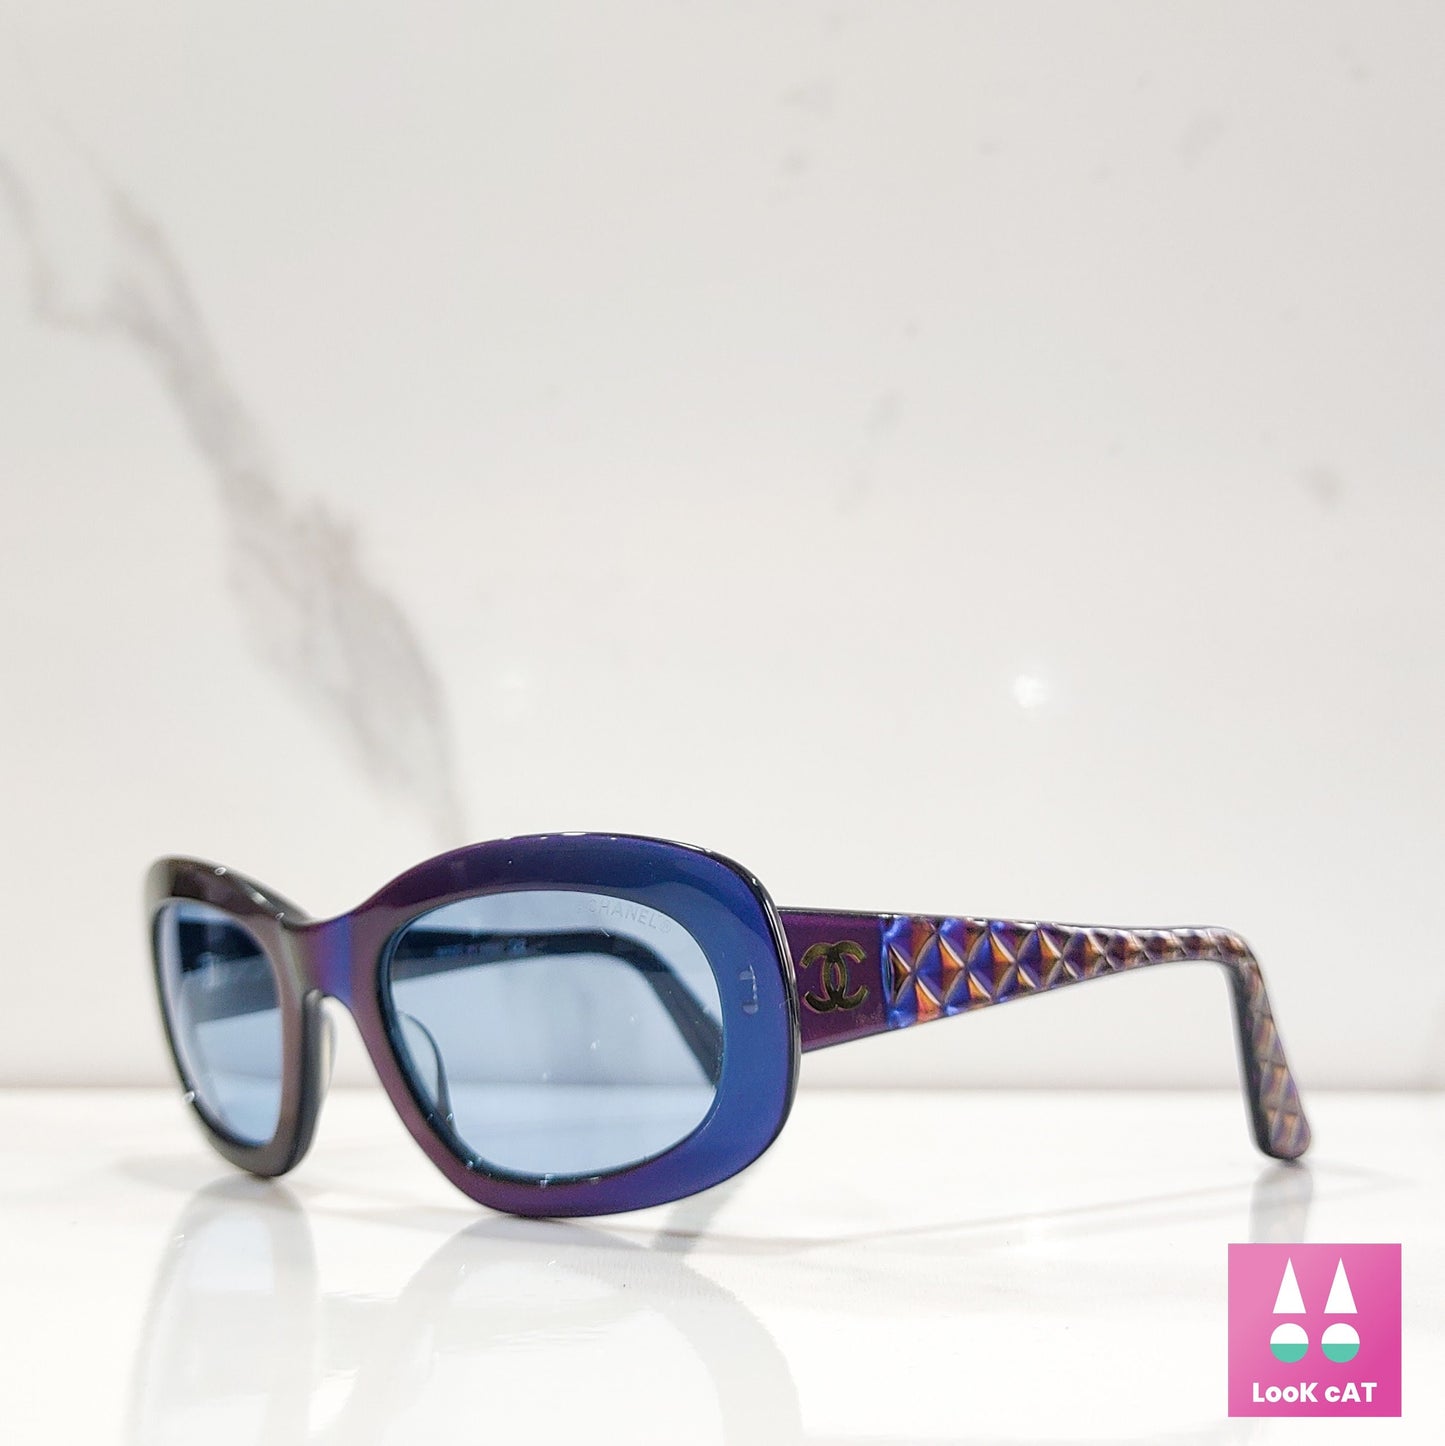 Chanel mod 5009 occhiali da sole vintage lunetta brille tonalità y2k occhiali senza montatura